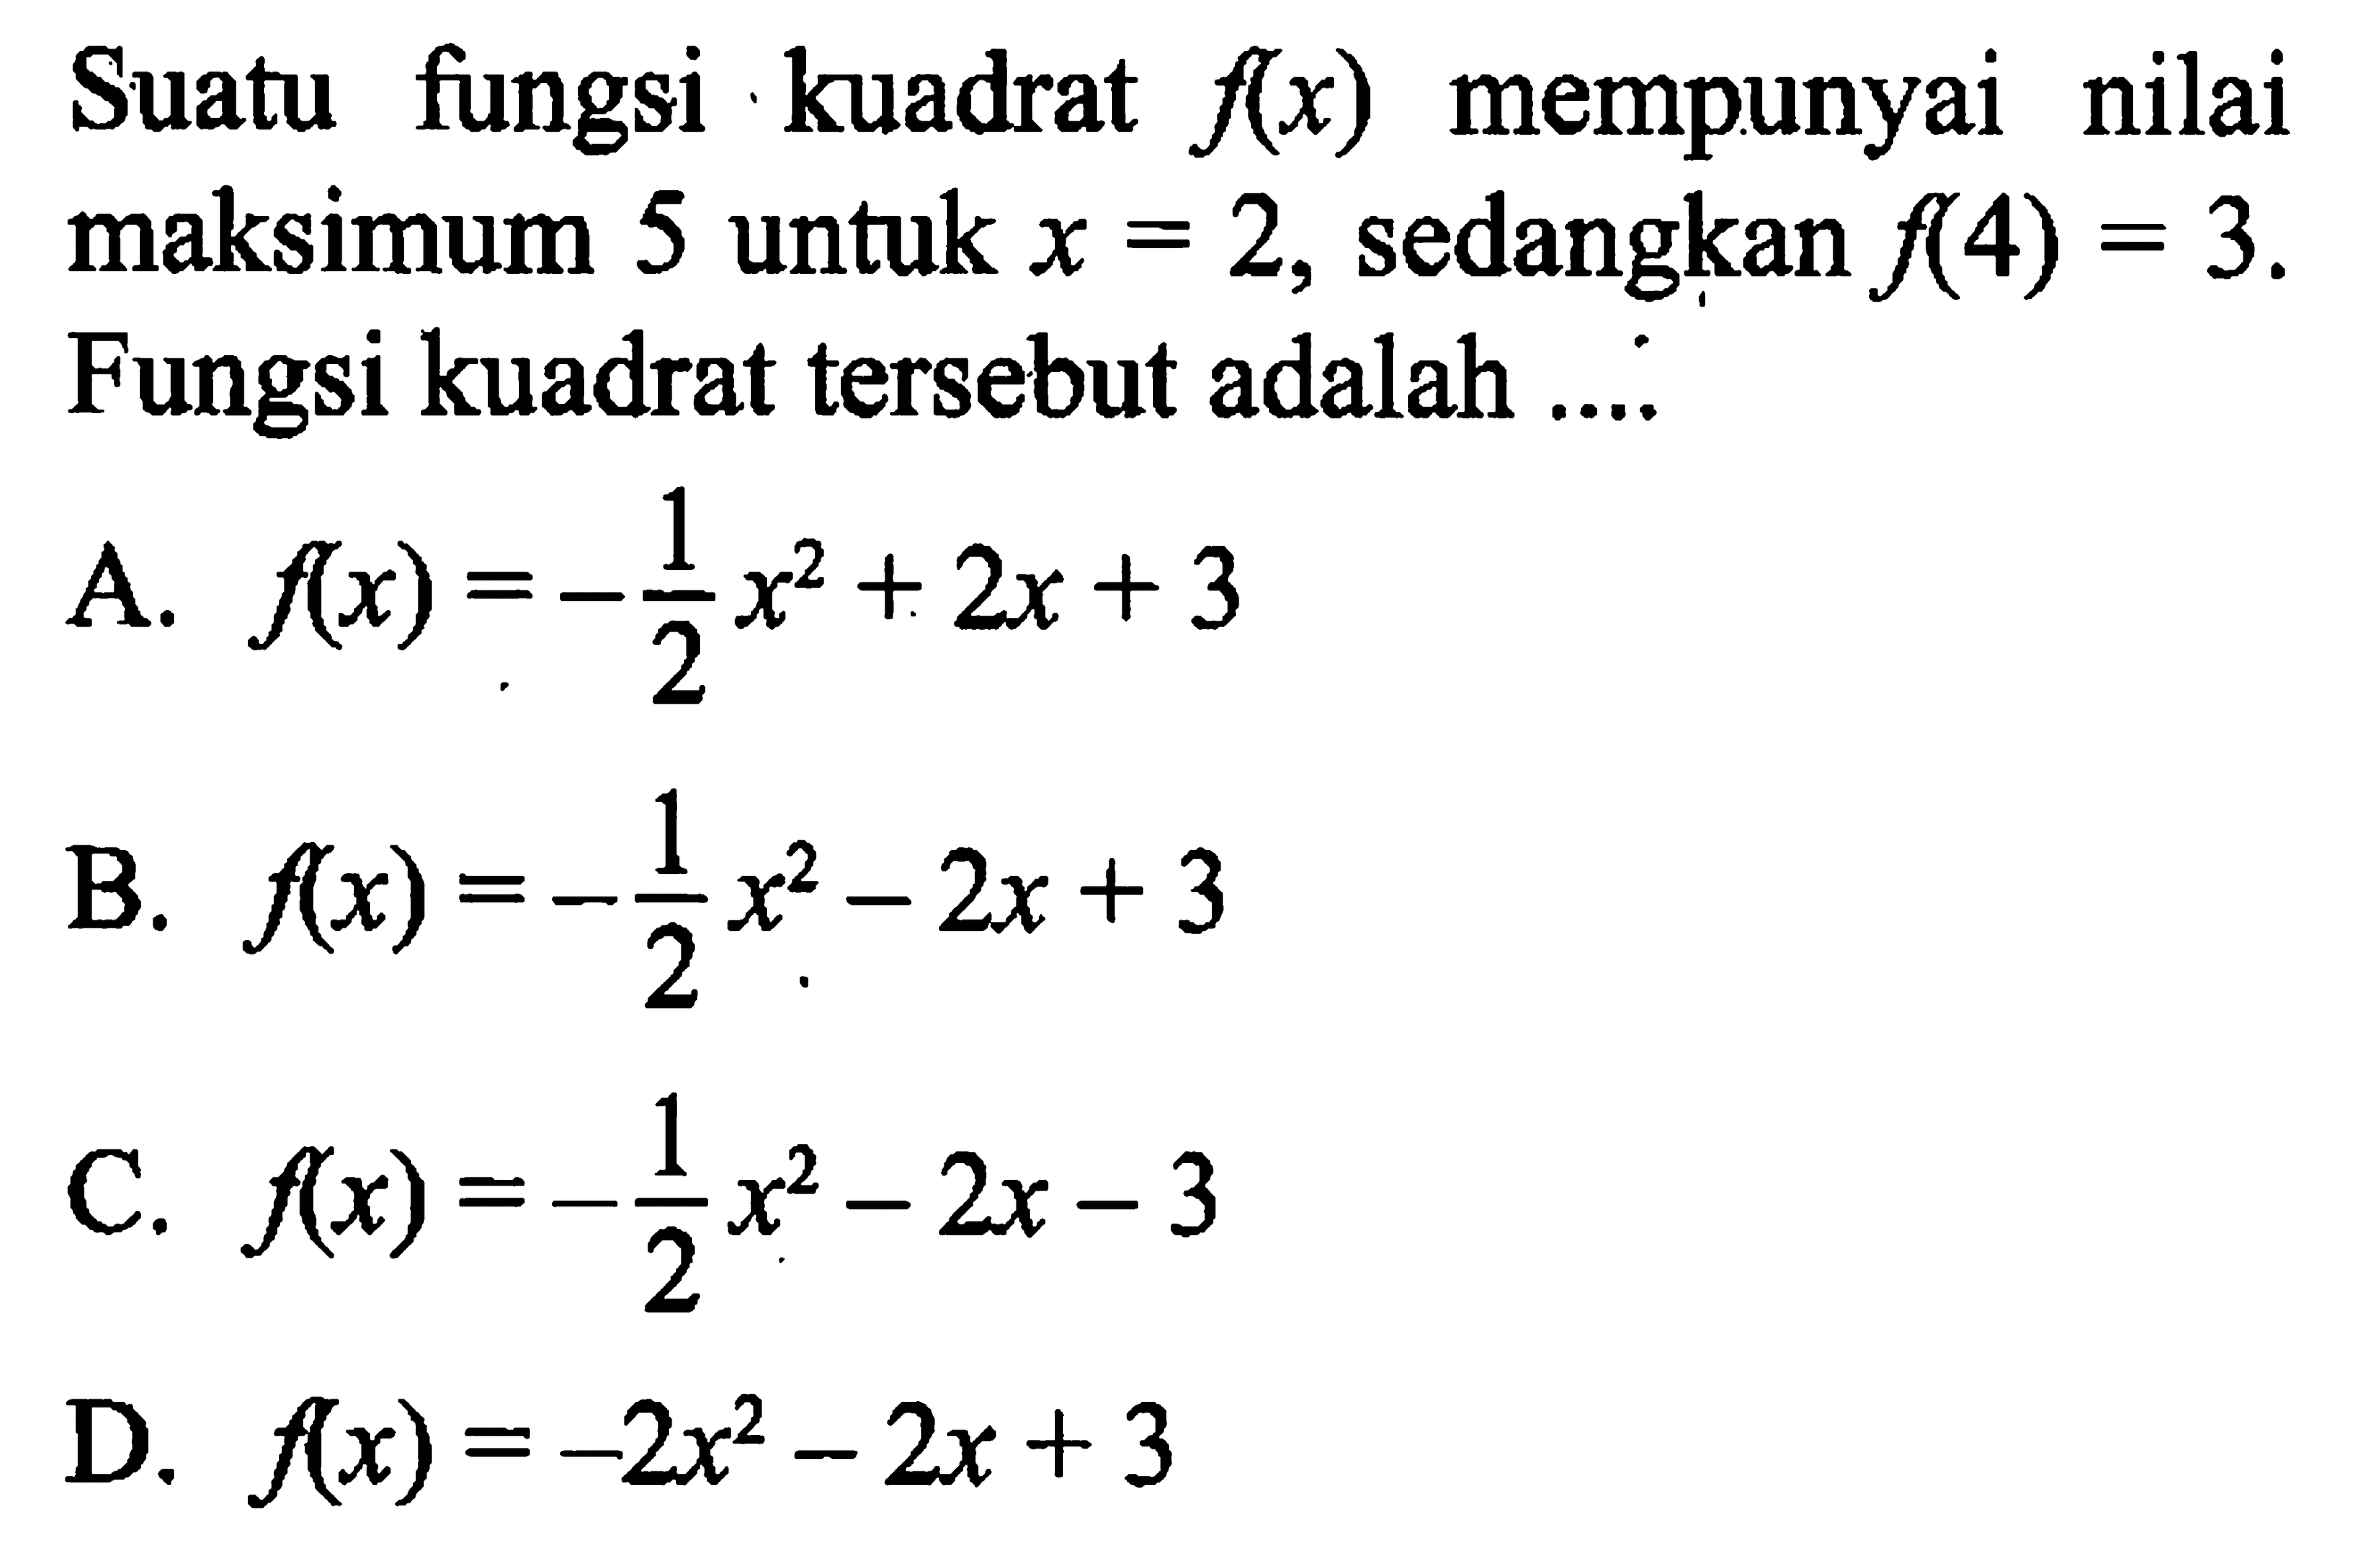 Suatu fungsi kuadrat f(x) mempunyai nilai maksimum 5 untuk x = 2, sedangkan f(4) = 3. Fungsi kuadrat tersebut adalah ....